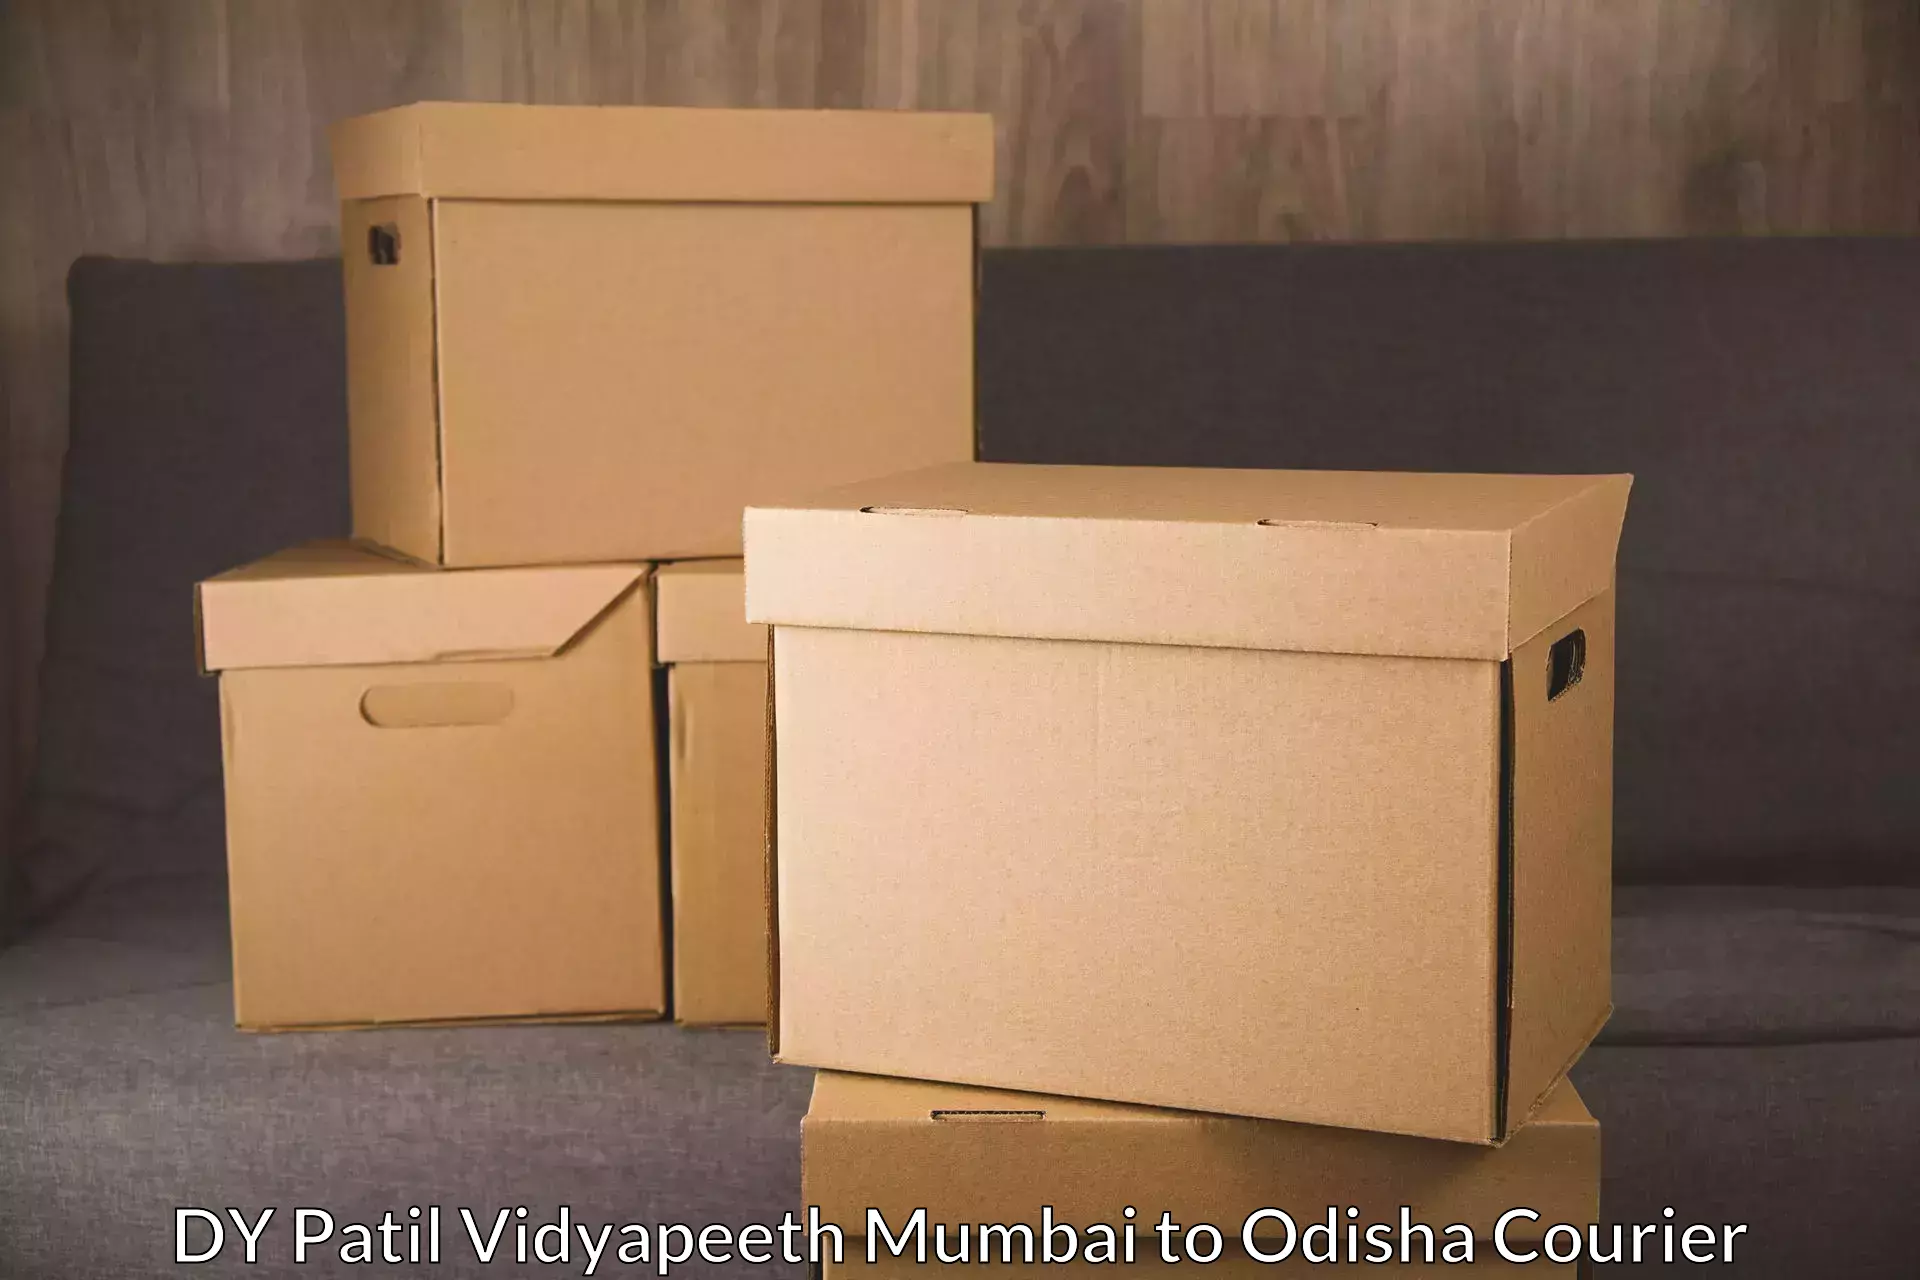 Express courier facilities DY Patil Vidyapeeth Mumbai to Tikiri